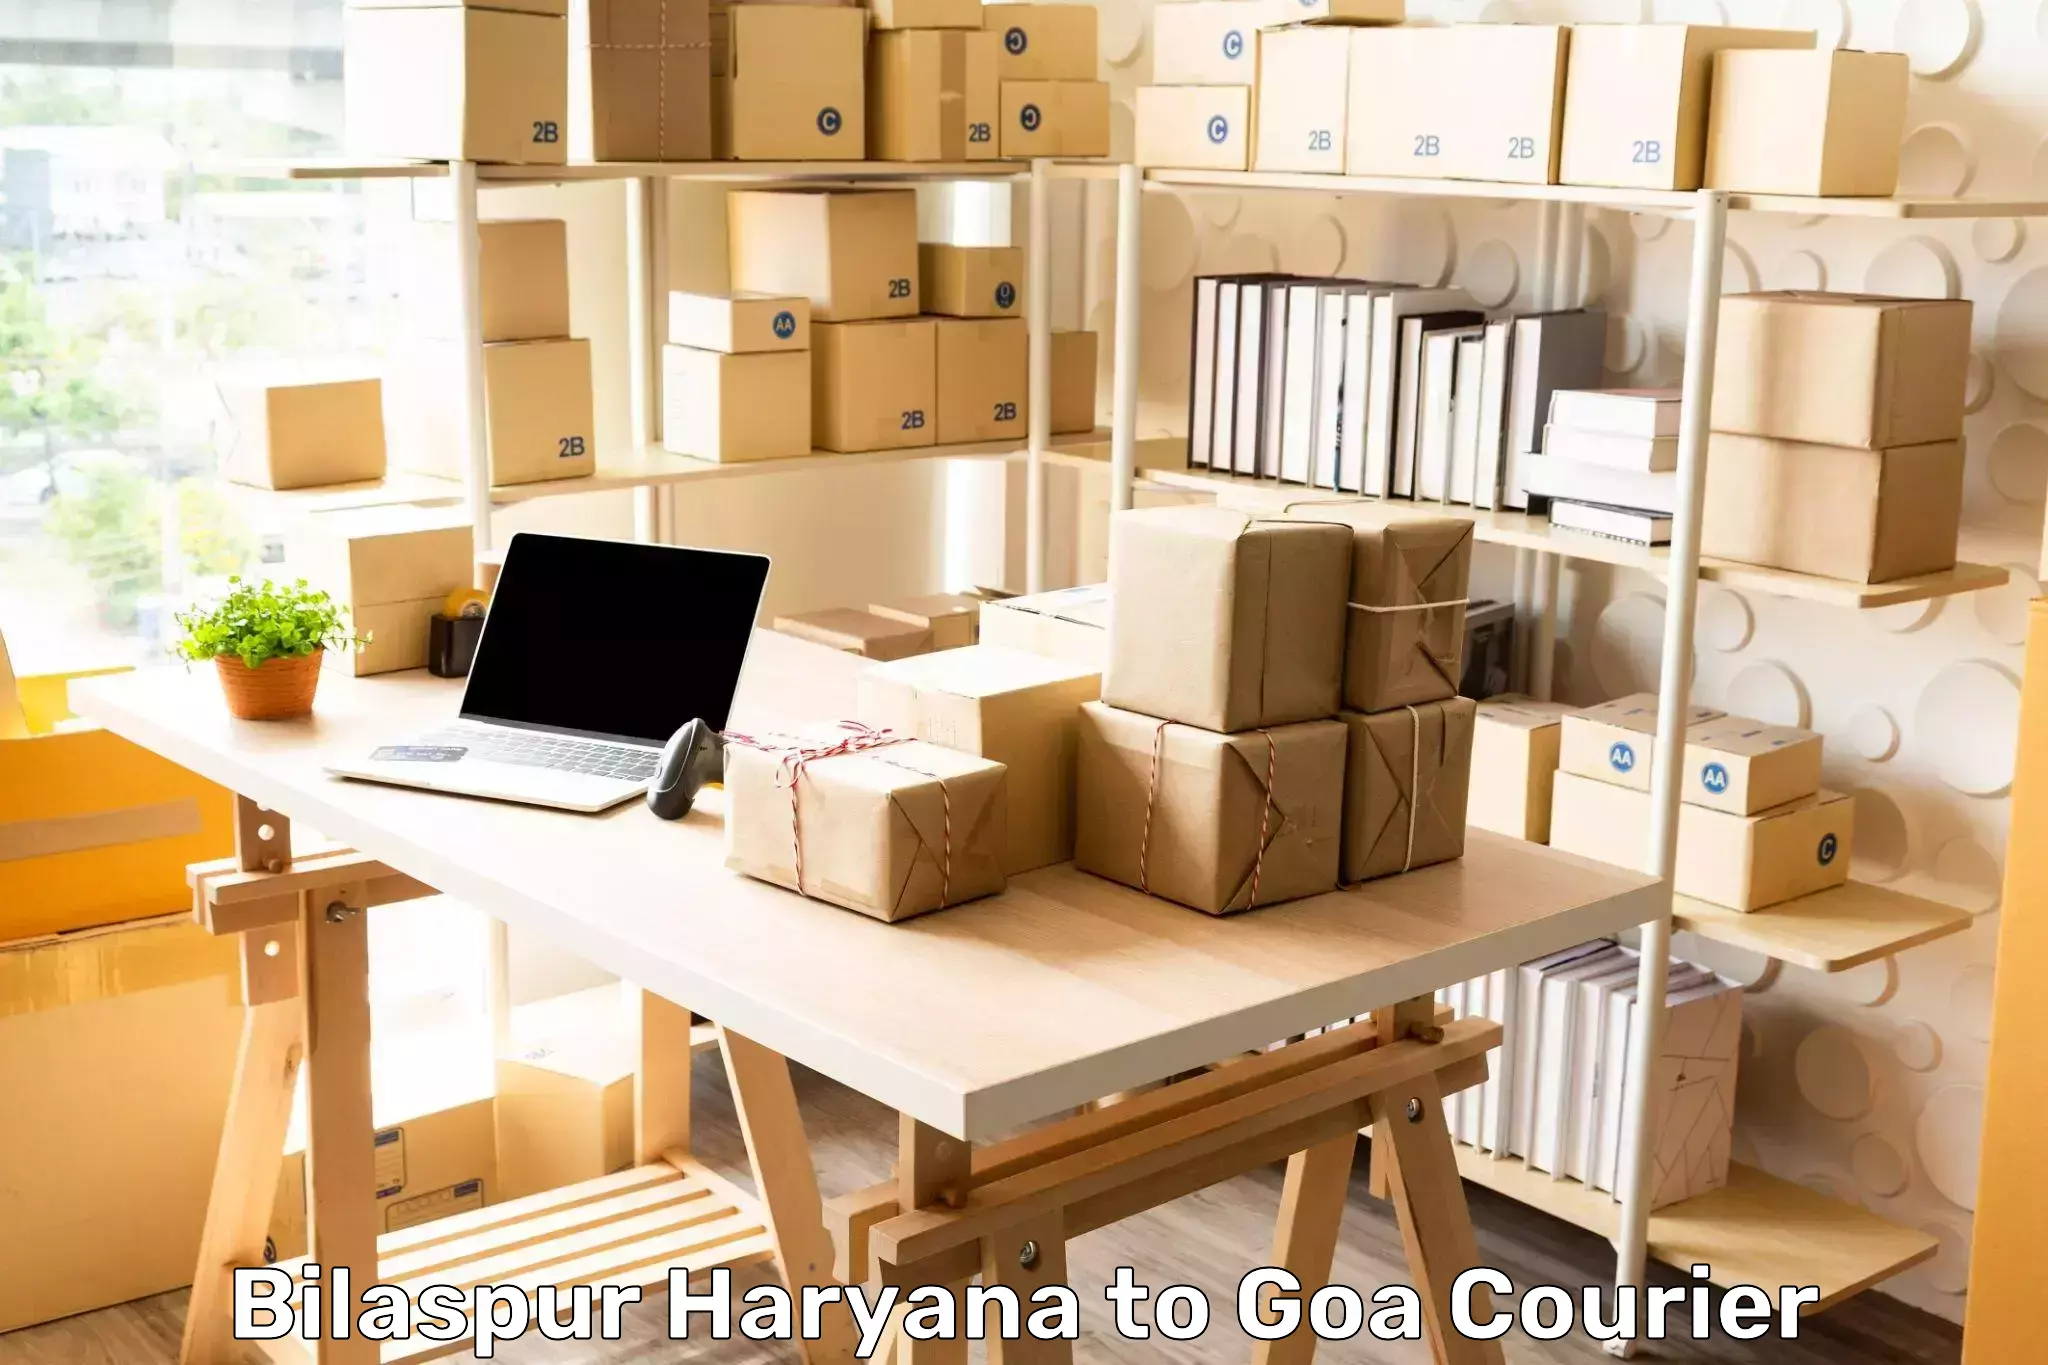 Next day courier Bilaspur Haryana to Goa